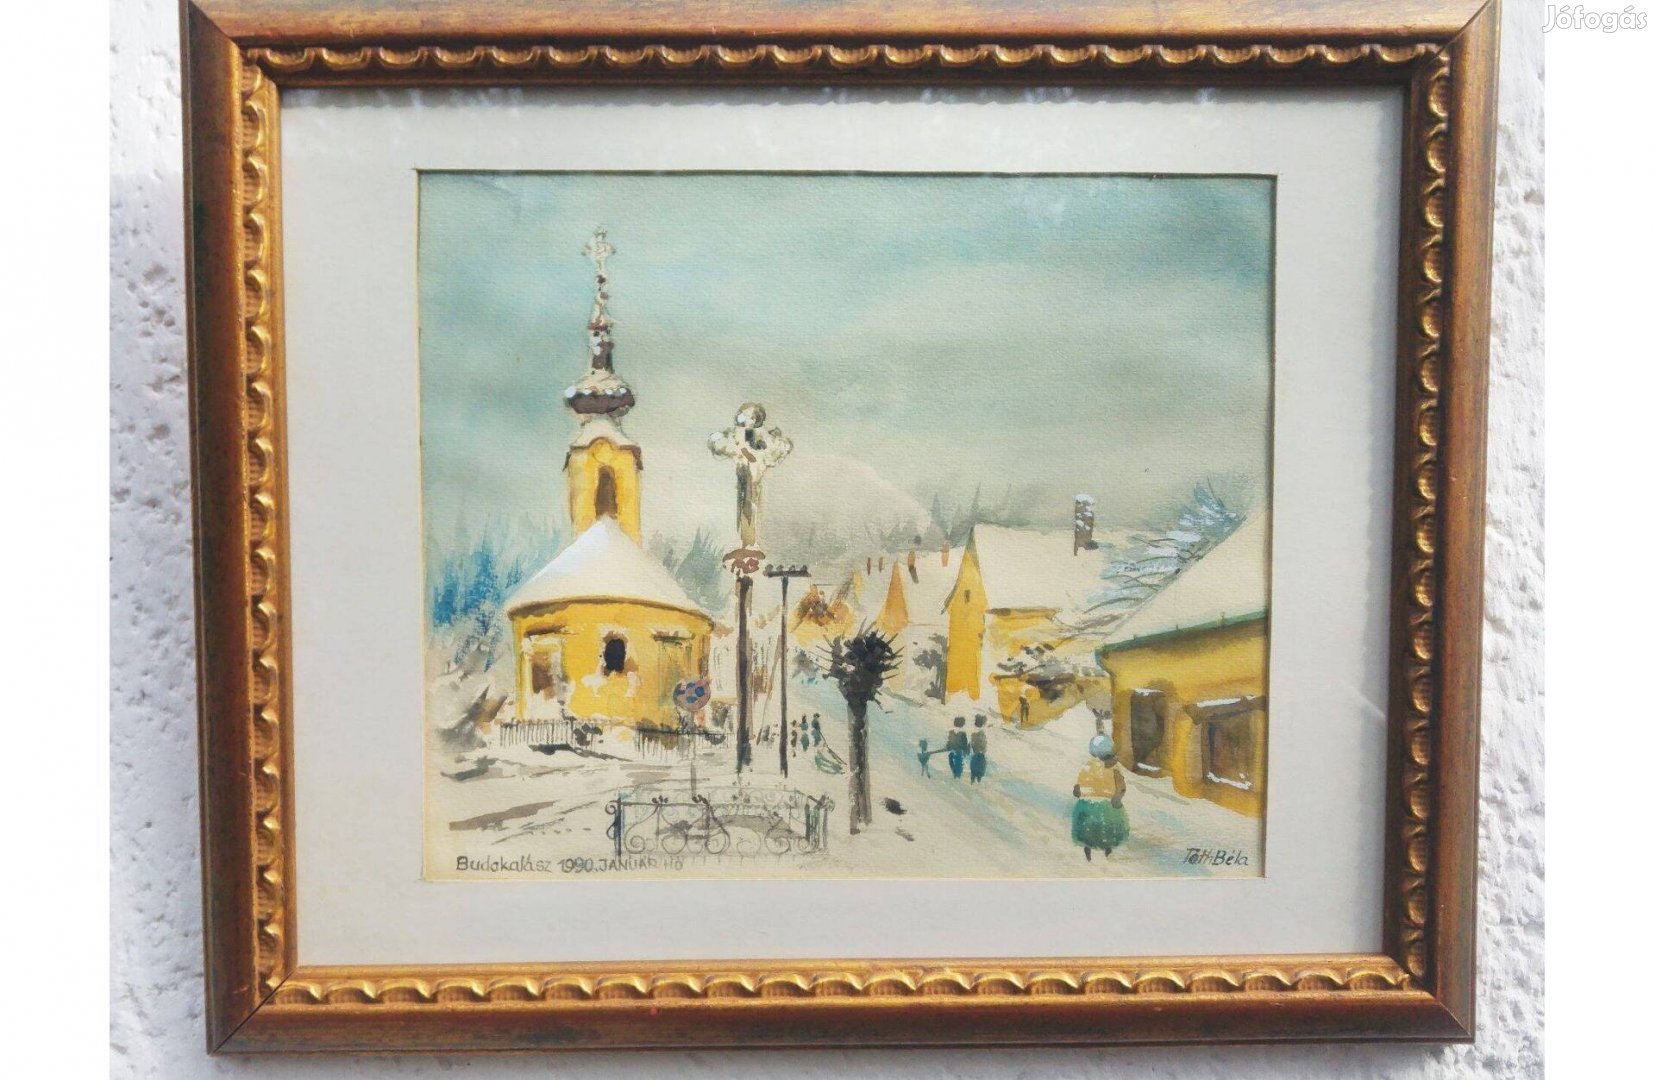 Tóth Béla Budakalász akvarell festménye